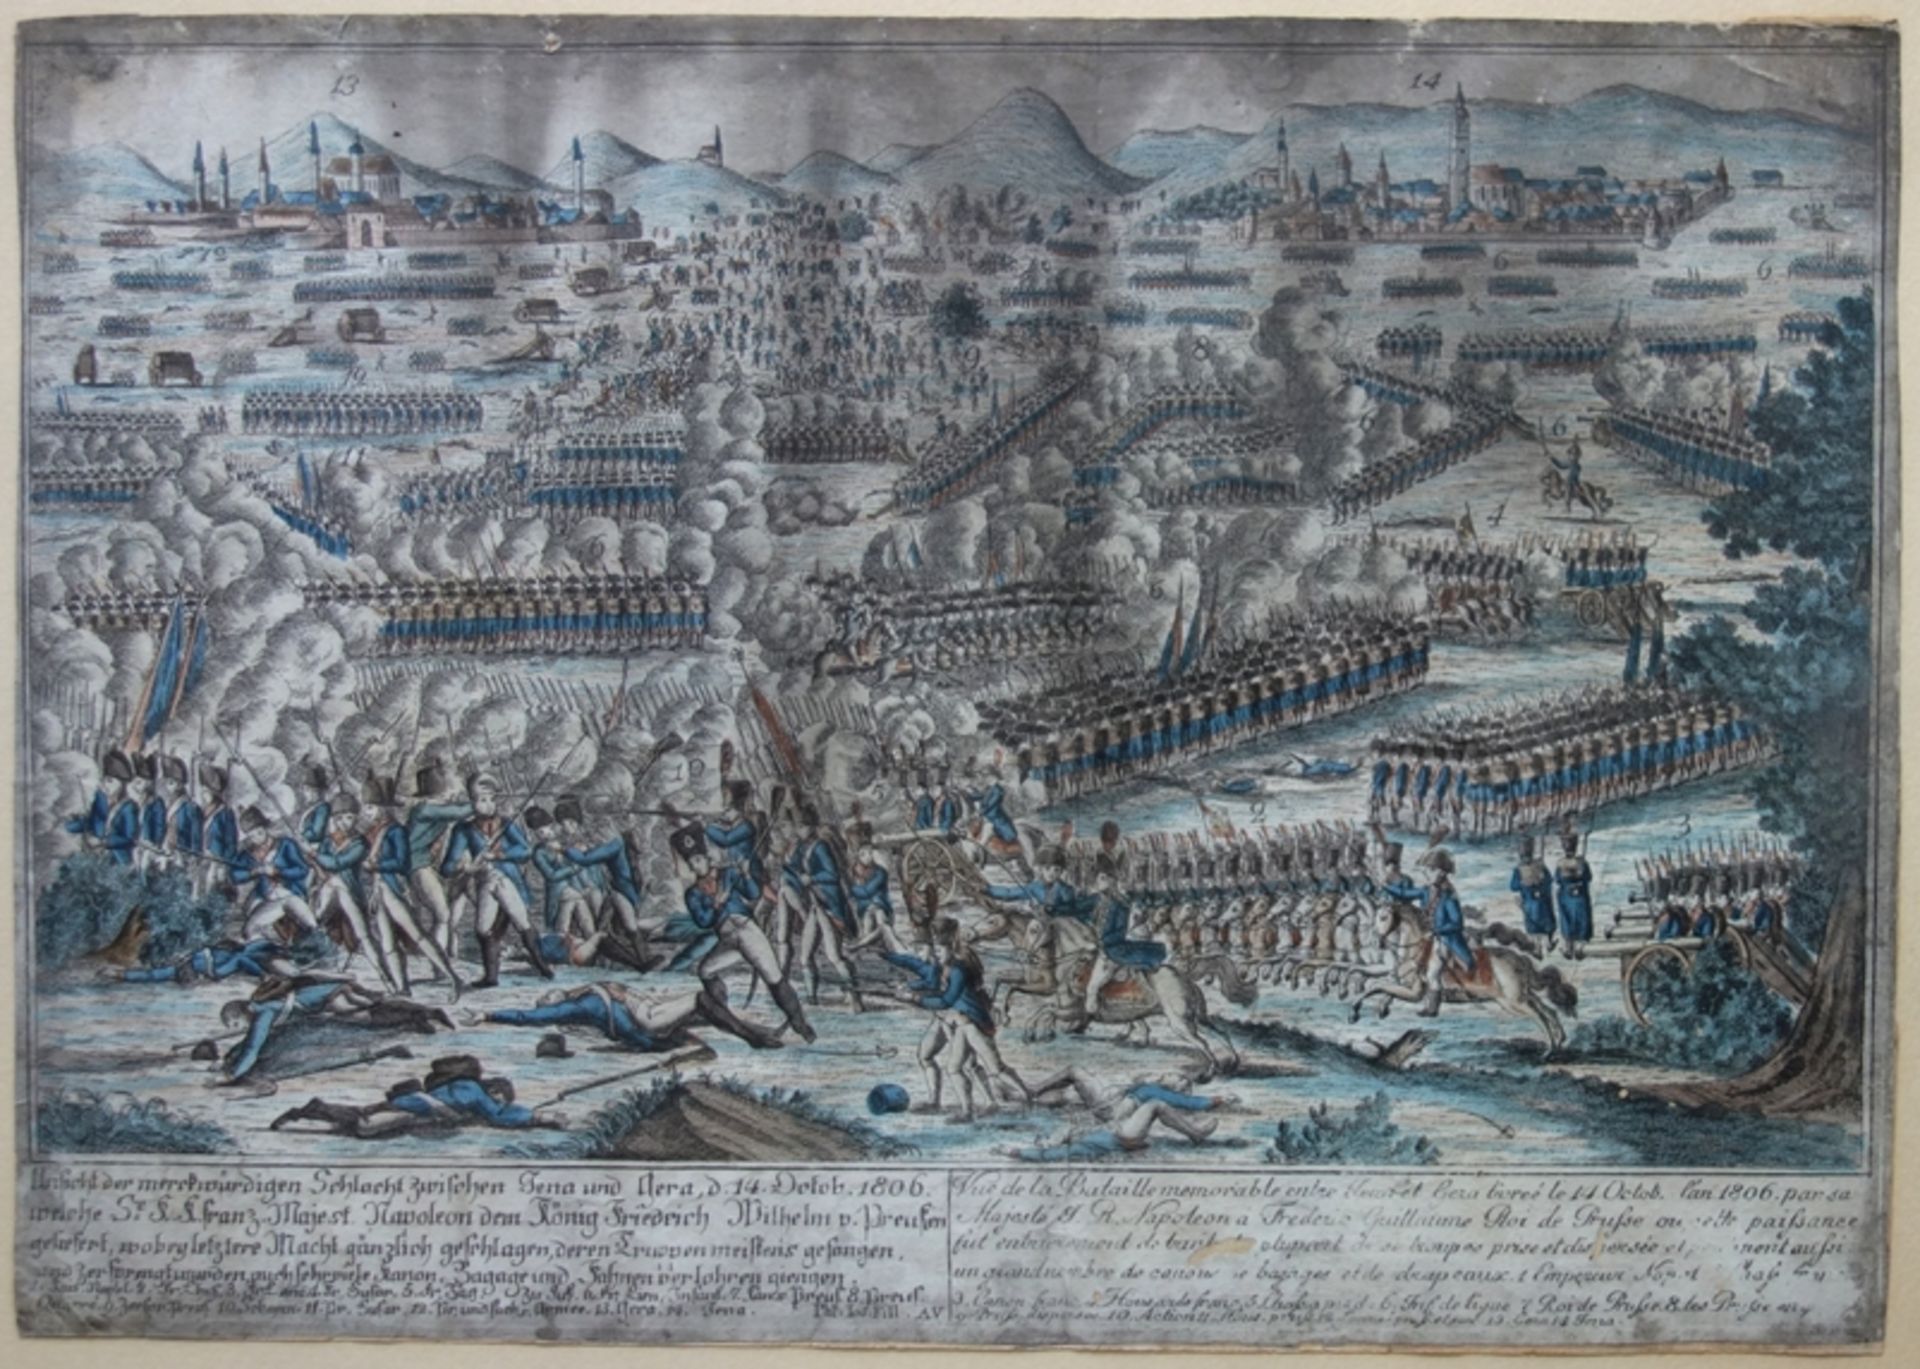 Historische Kupferstichkarte "Ansicht der merckwürdigen Schlacht zwischen Jena und Gera", 1806 - Bild 2 aus 2